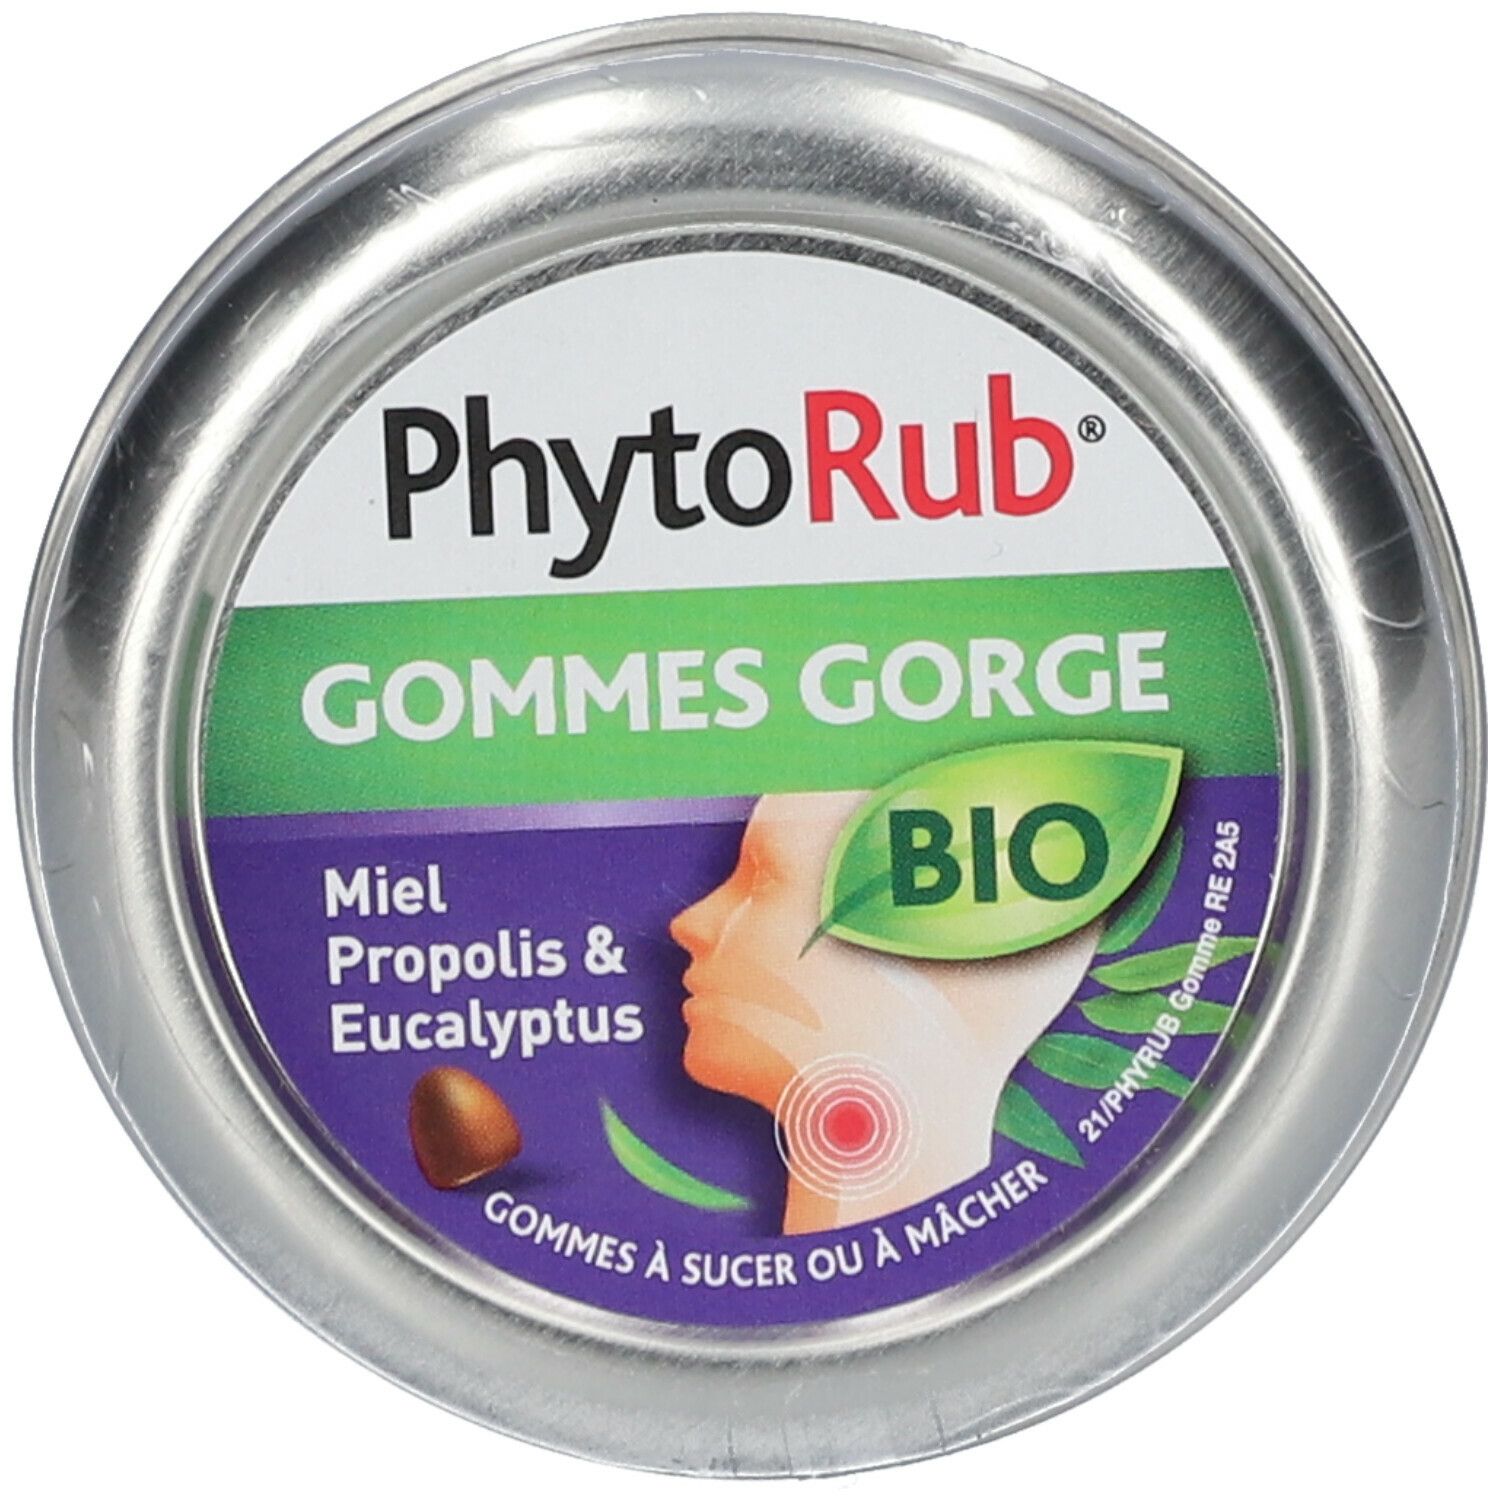 Nutreov Physcience PhytoRub® Gomme Gorge BIO